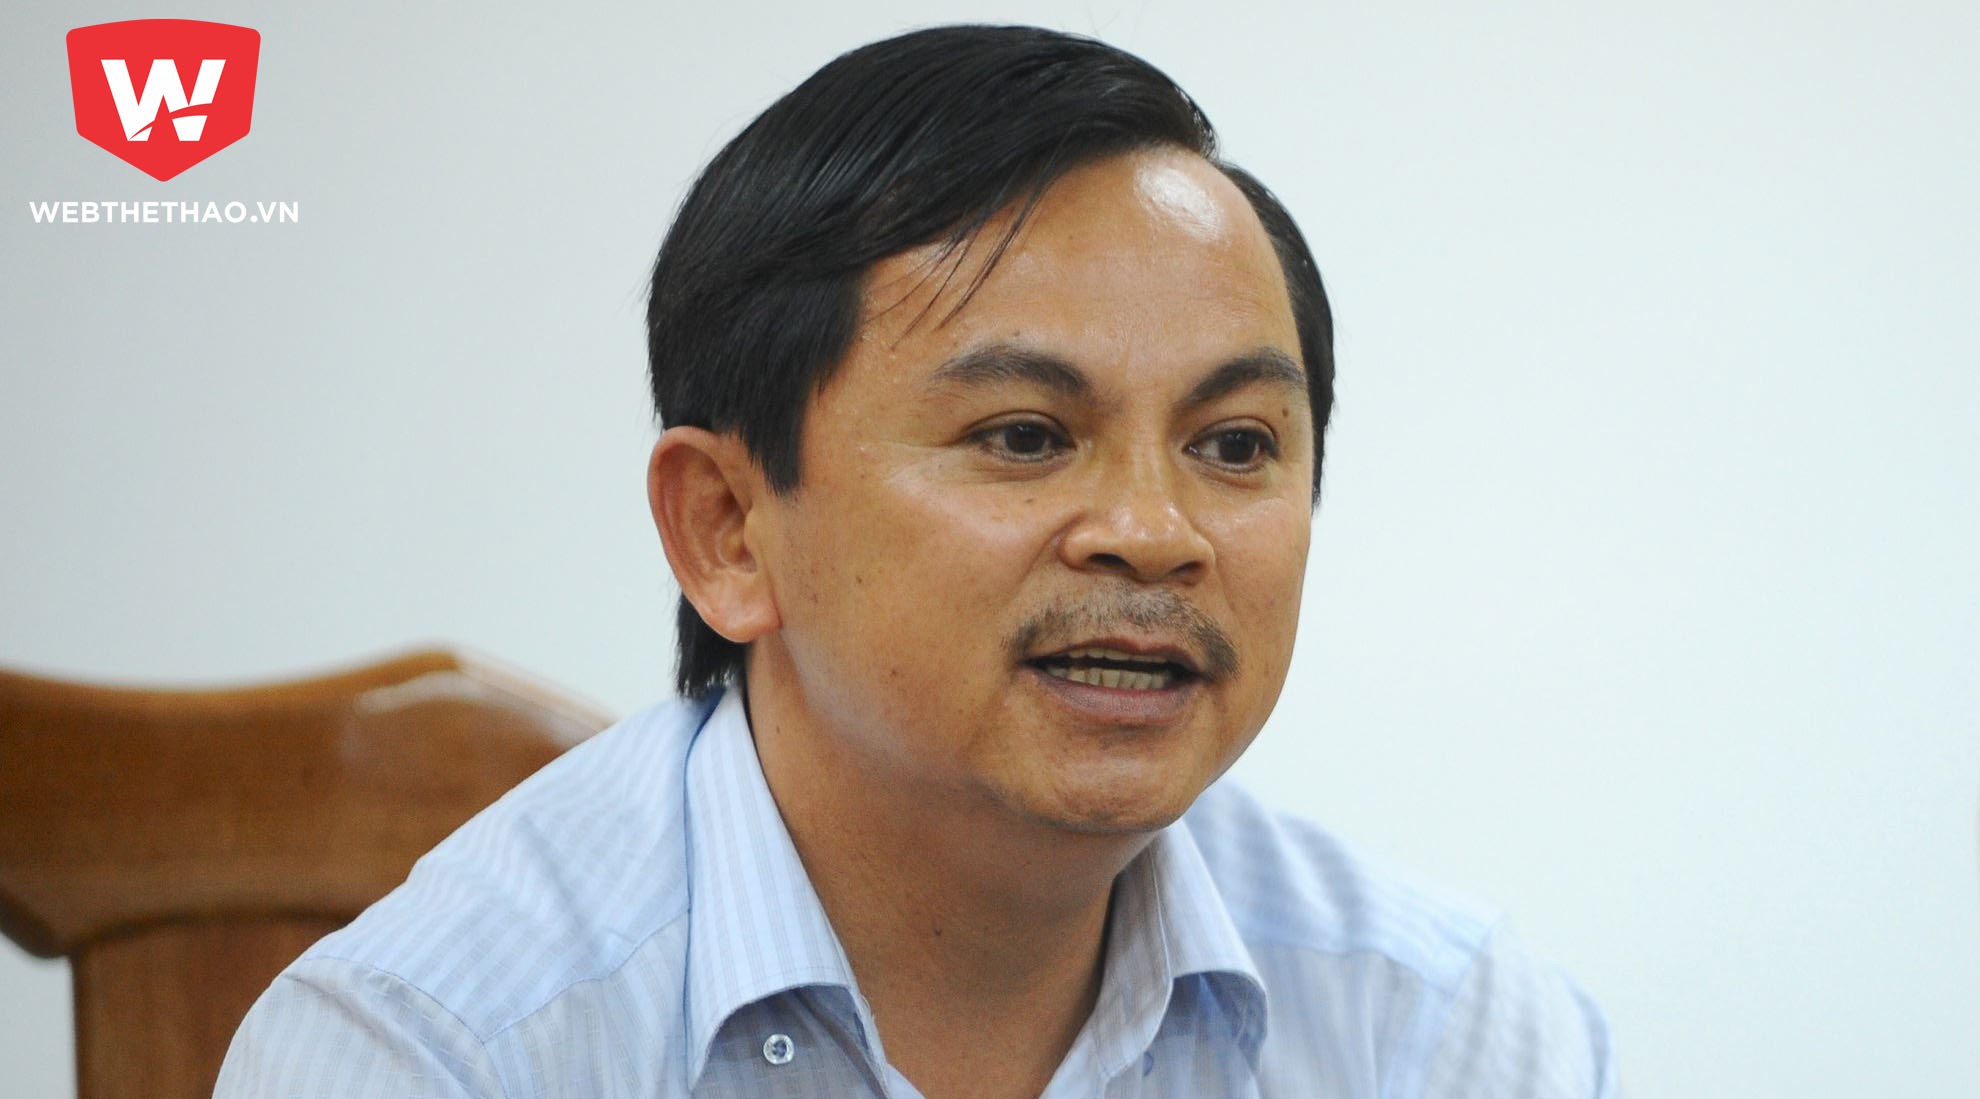 Ông Võ Thành Nhiệm bị cấm tham gia các hoạt động bóng đá do VFF tổ chức 3 năm.